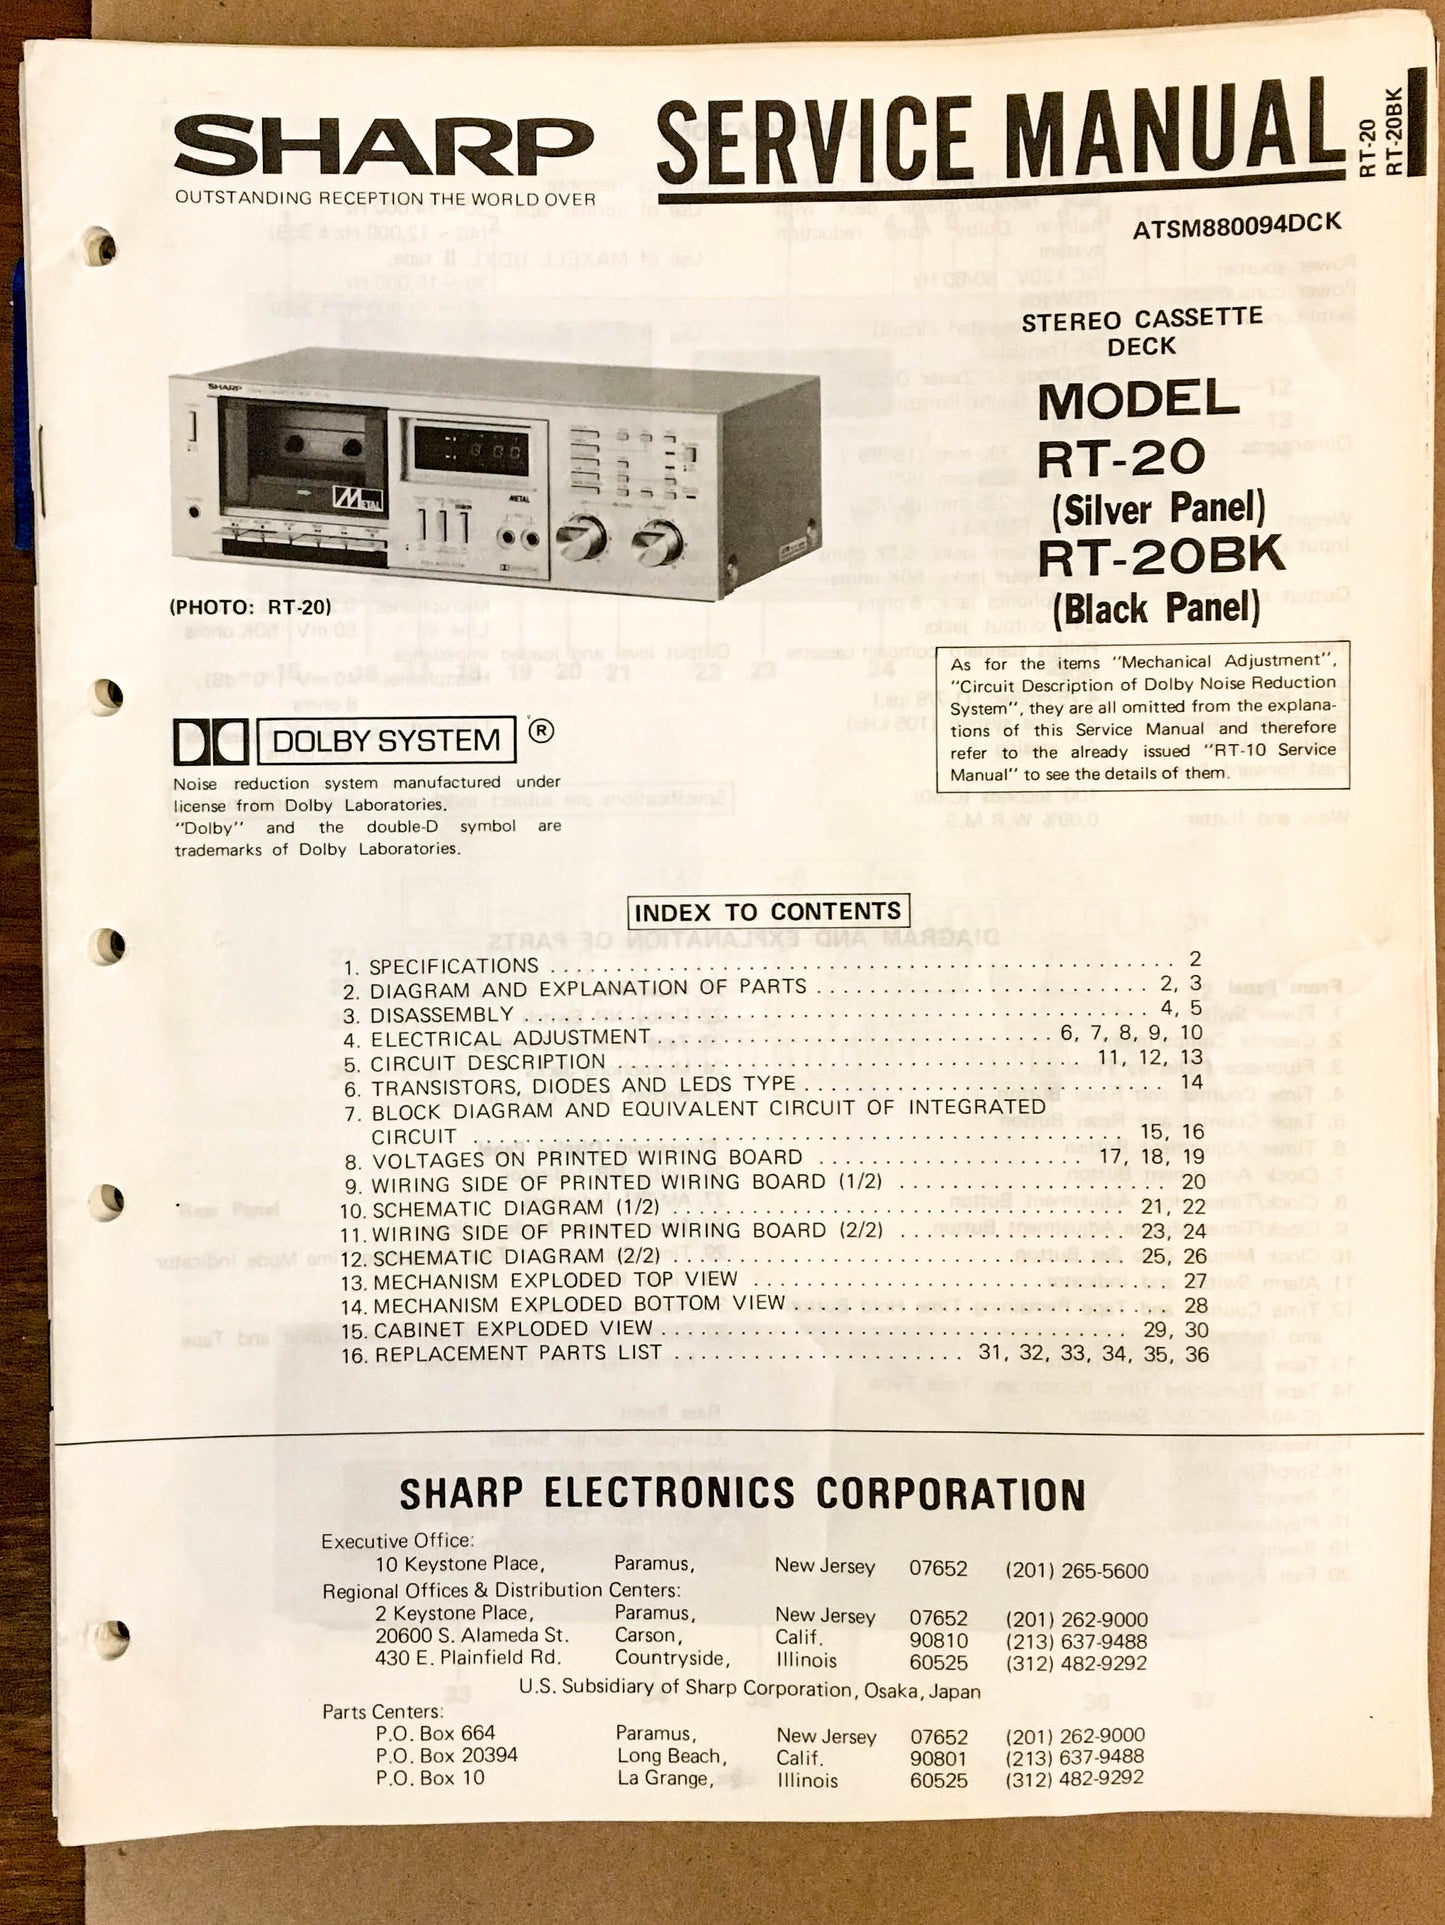 Sharp RT-20 Cassette Deck  Service Manual *Original*